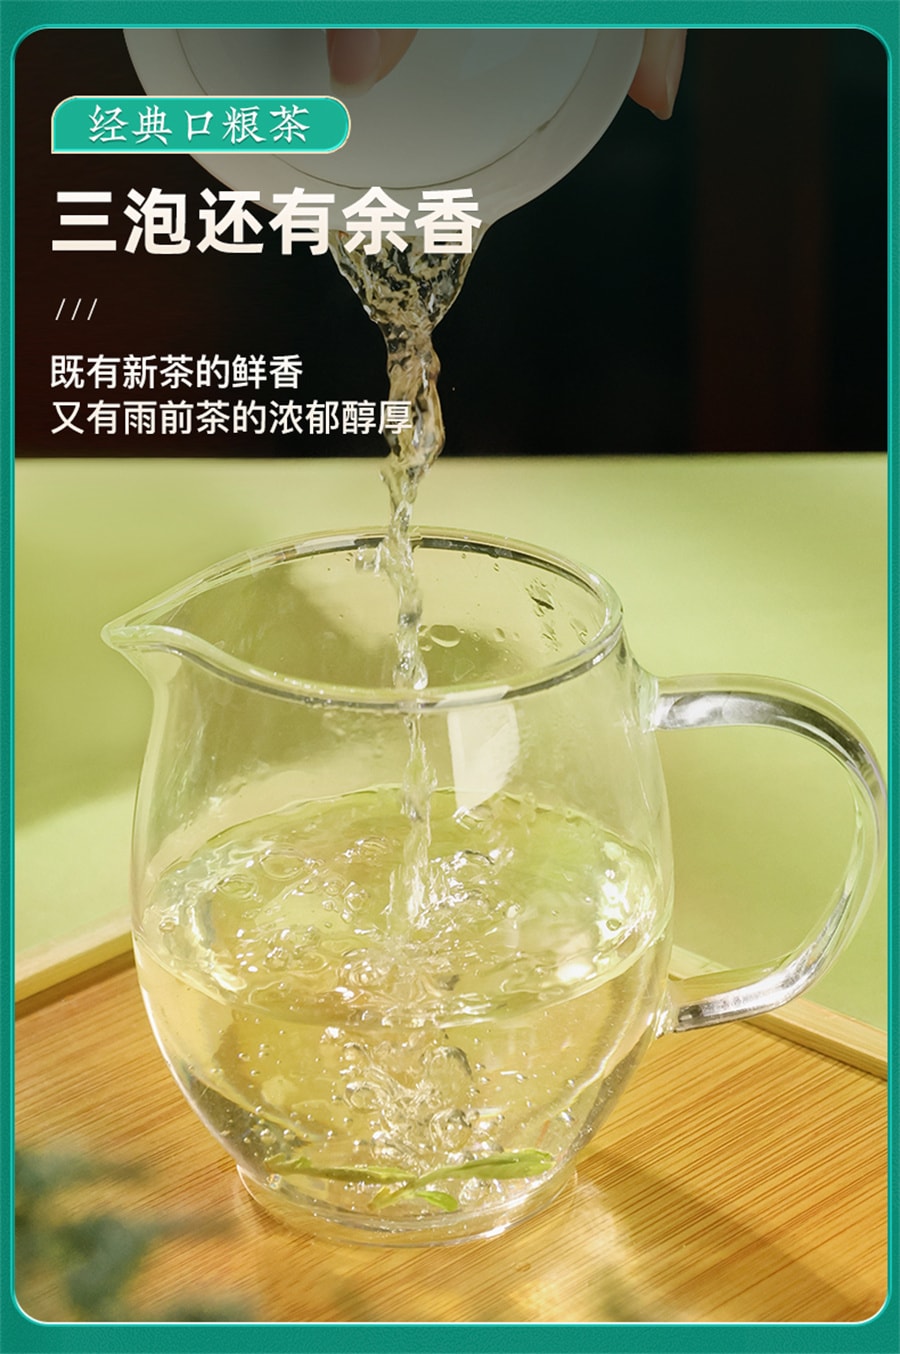 【中国直邮】西湖牌  雨前浓香龙井茶200g春茶绿茶茶叶  200g/包